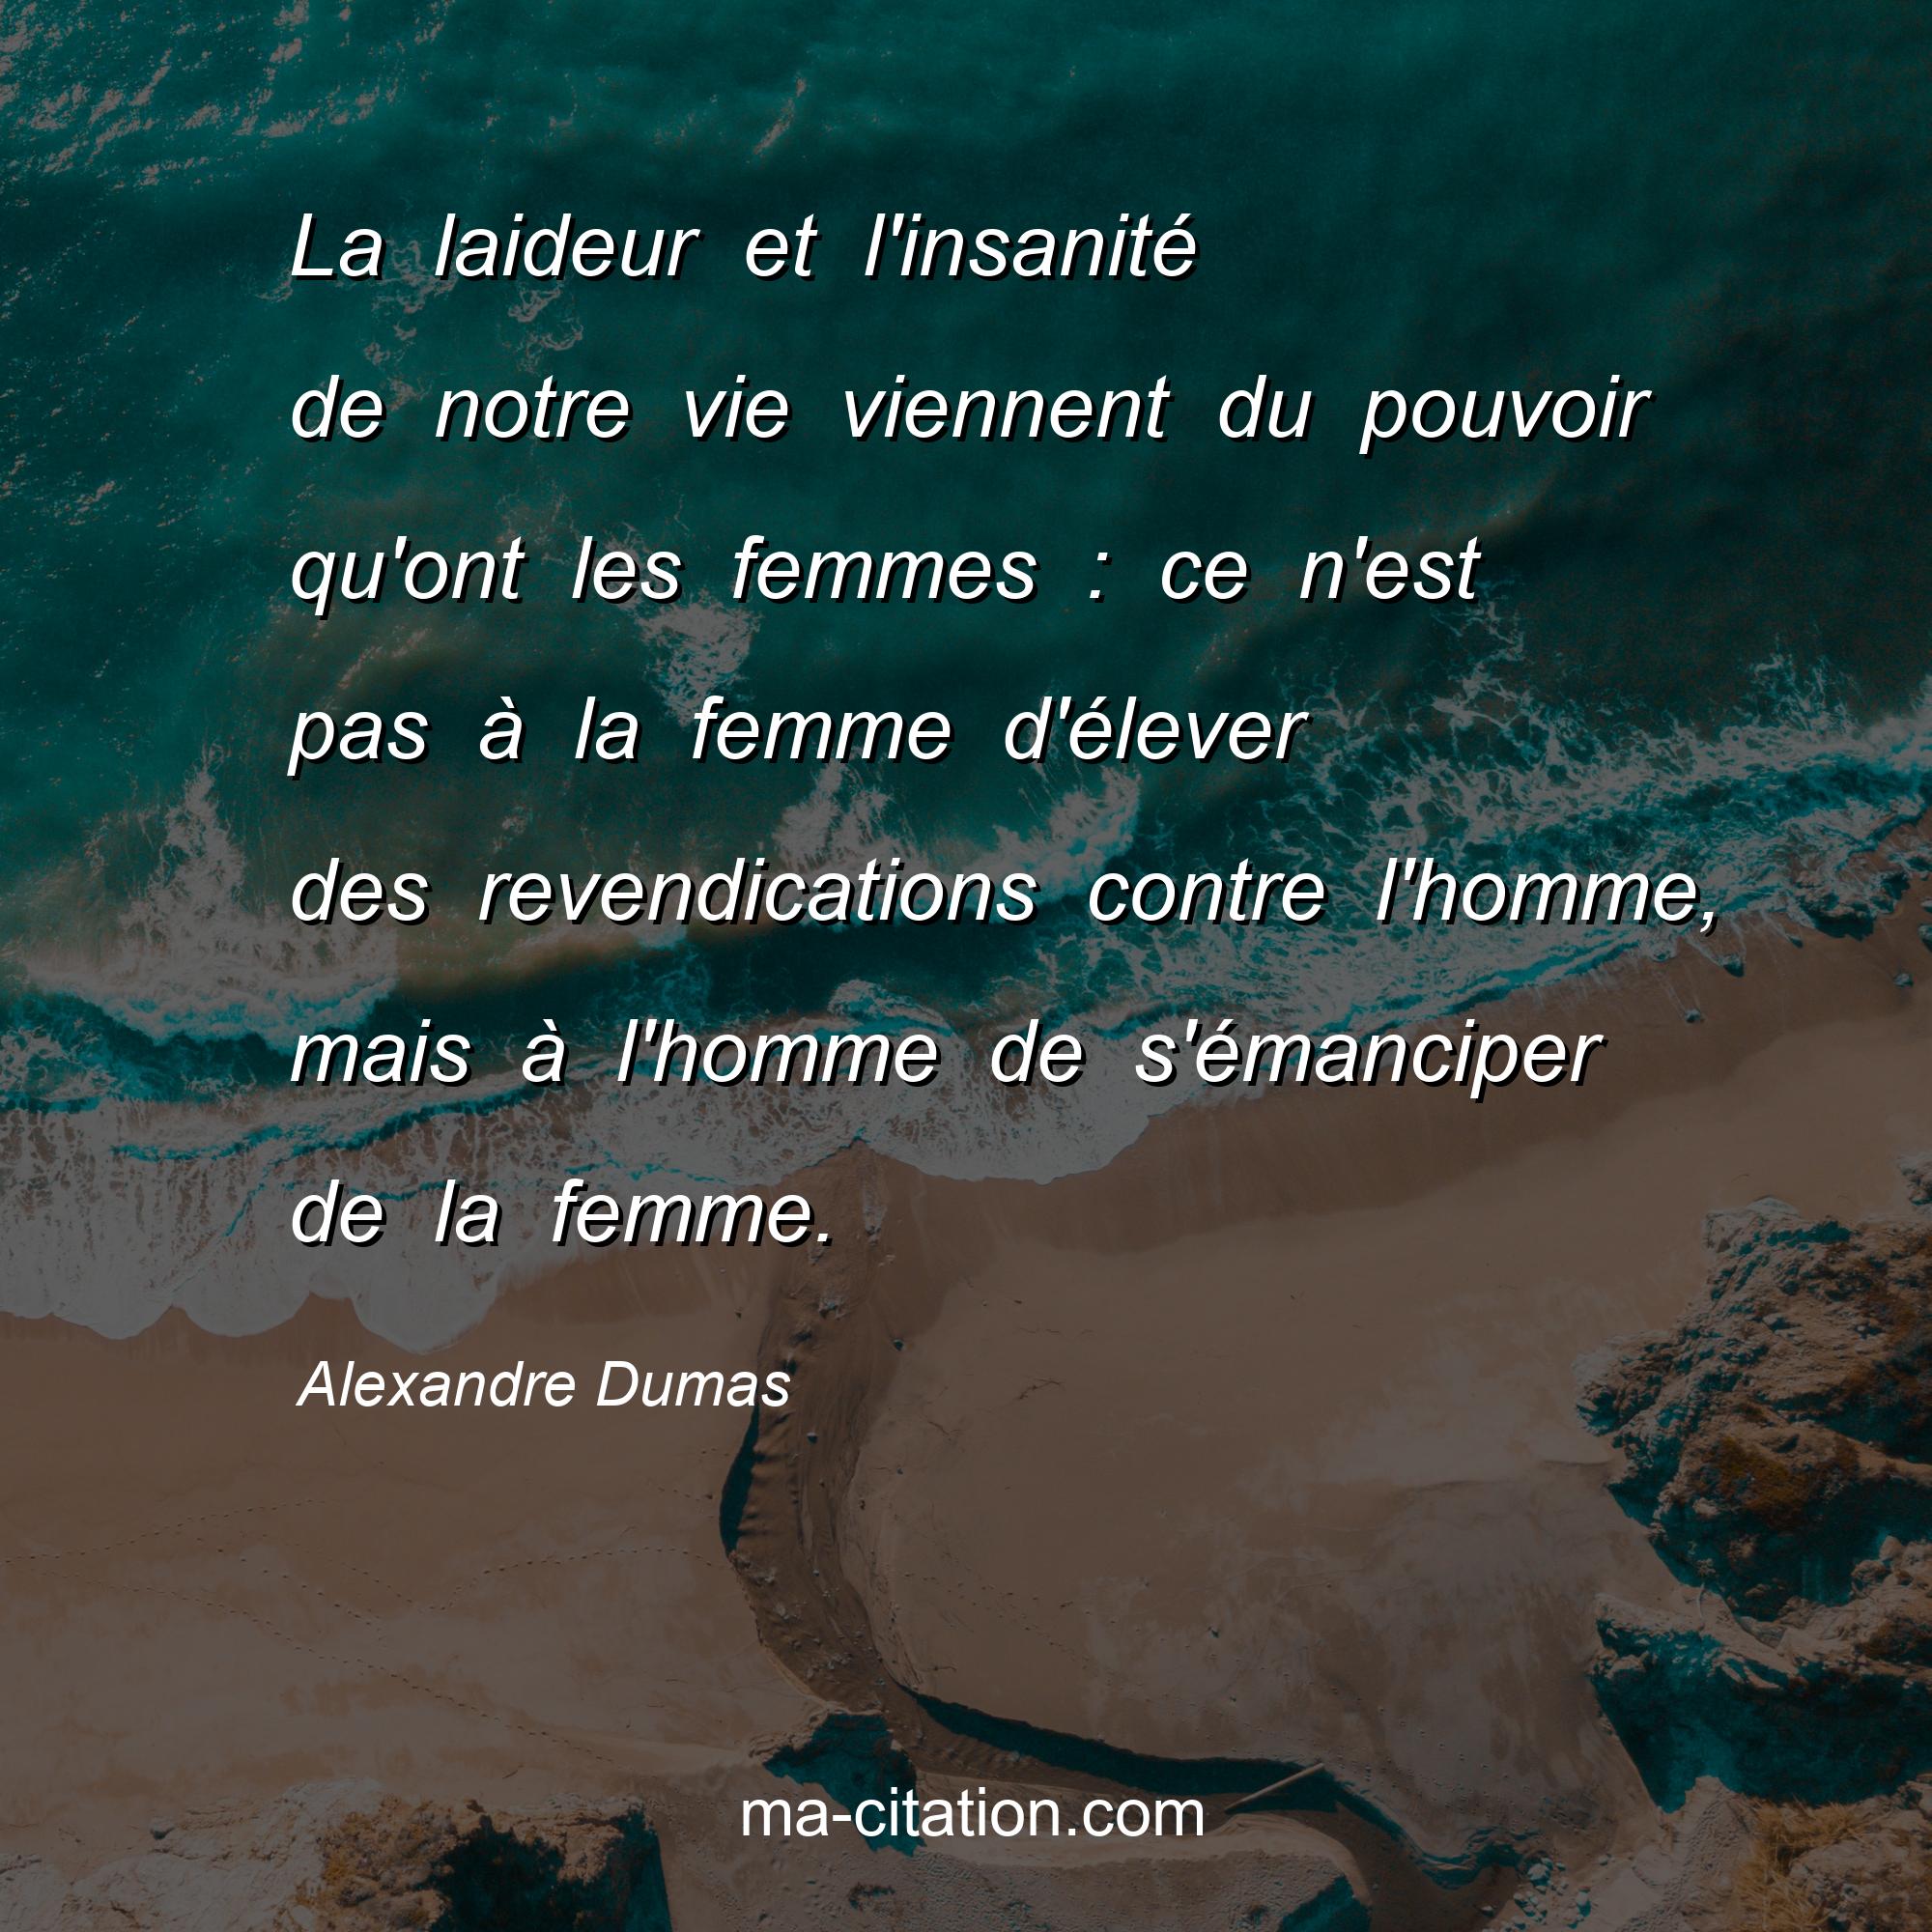 Alexandre Dumas : La laideur et l'insanité de notre vie viennent du pouvoir qu'ont les femmes : ce n'est pas à la femme d'élever des revendications contre l'homme, mais à l'homme de s'émanciper de la femme.